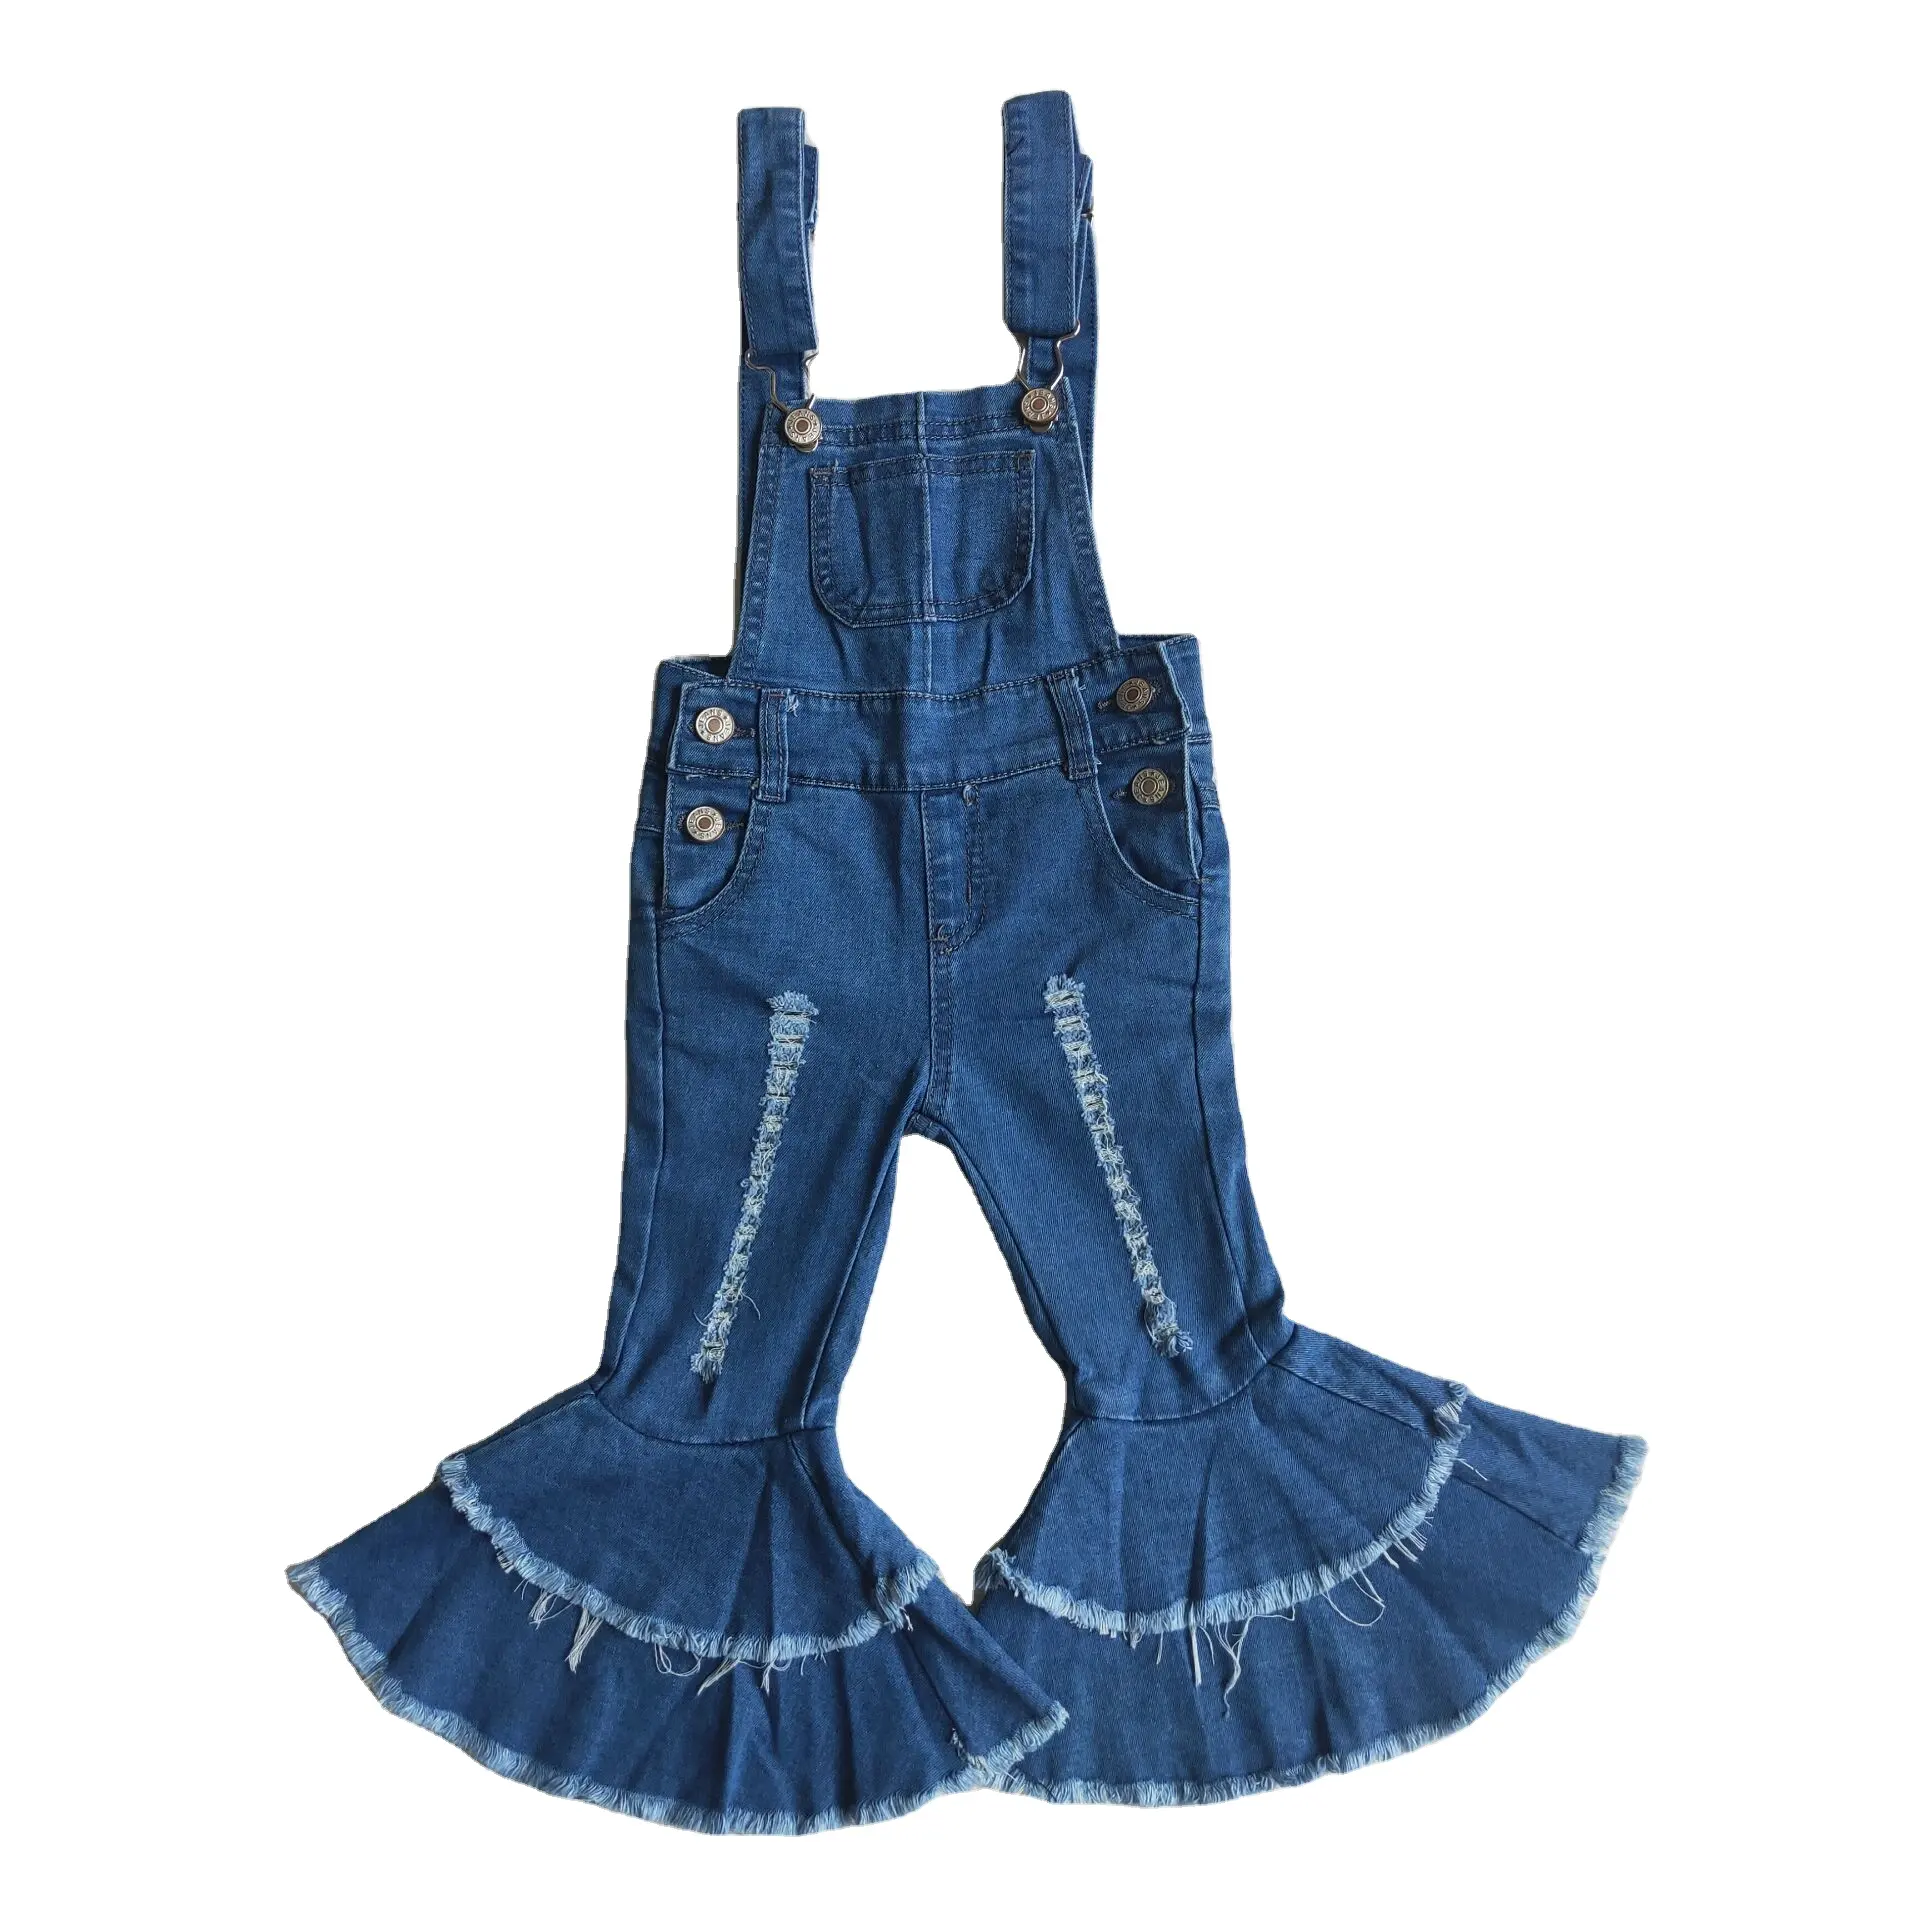 191006 SOLOCOTE Girls Denim Overalls with Adjustable Belt Jumpers BF Jeans Jumpsuit Suspender Shortall Bib Pocket Light Blue 9-10Y 